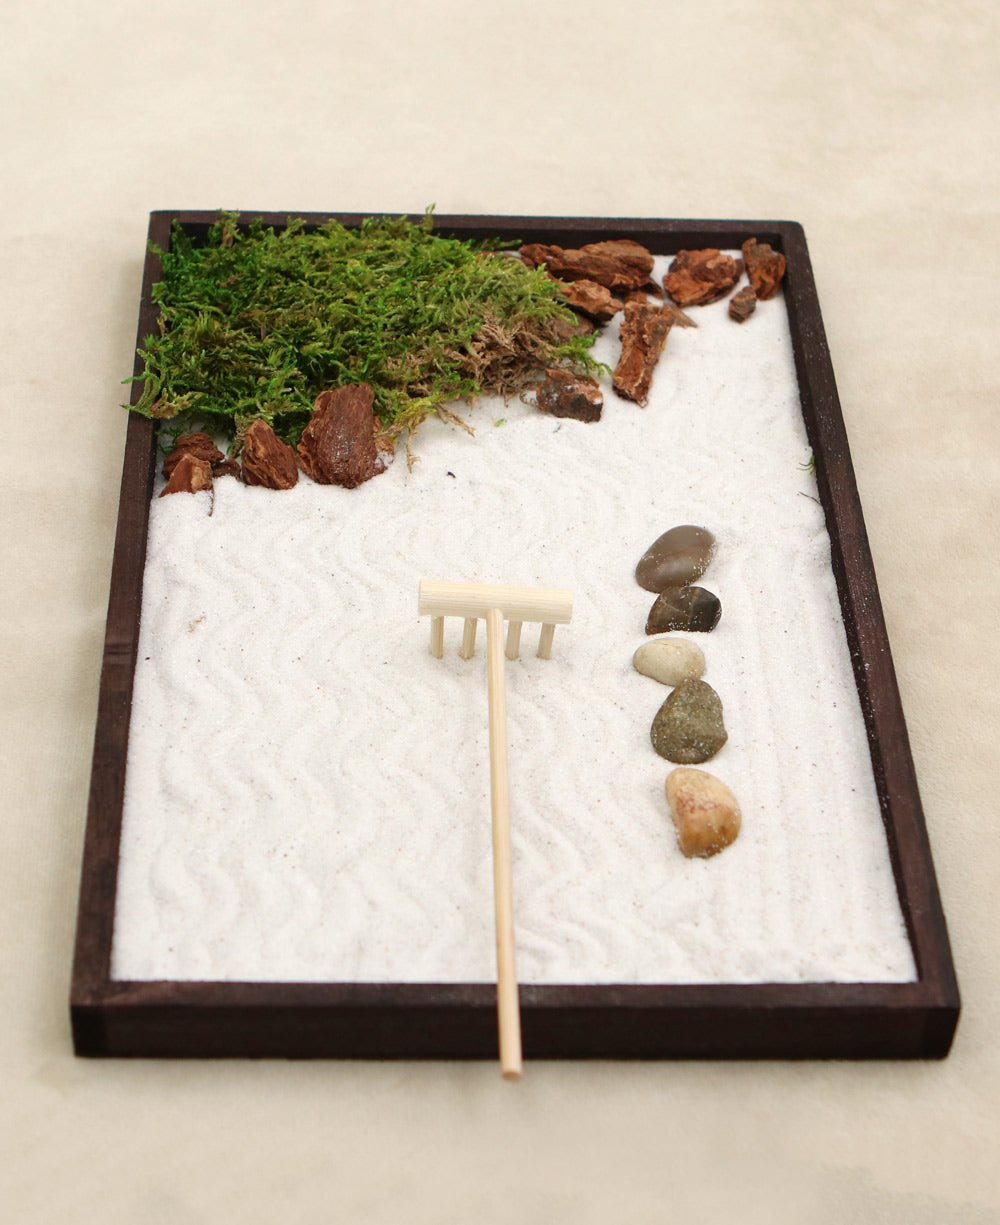 Japanese Zen Garden Meditation Gifts – Home Office Zen Decor Zen Gifts for  Women Lady Friends – Rock Sand Bonsai Zen Garden for Desk Decoration – DIY